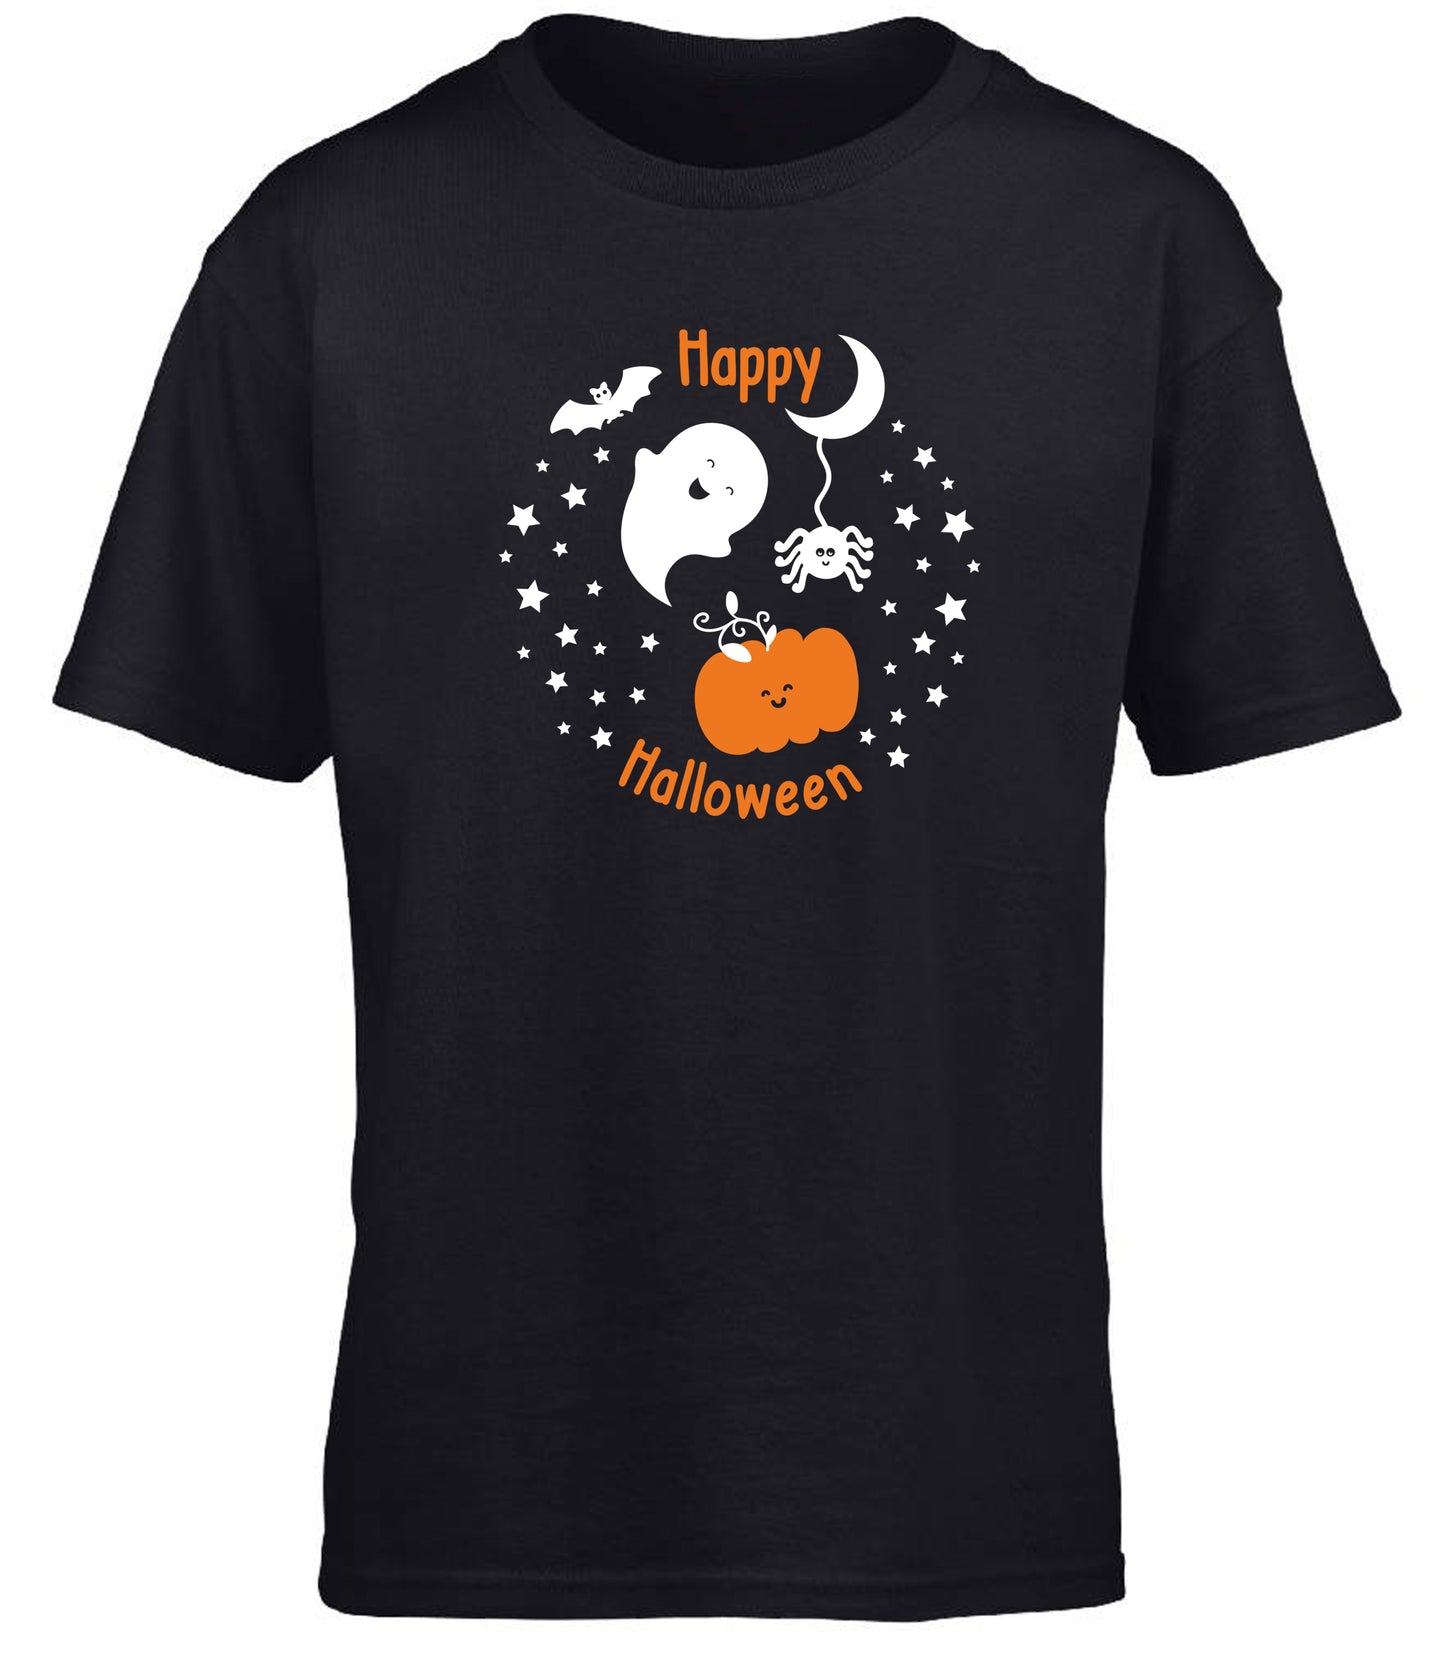 Happy Halloween children's T-shirt